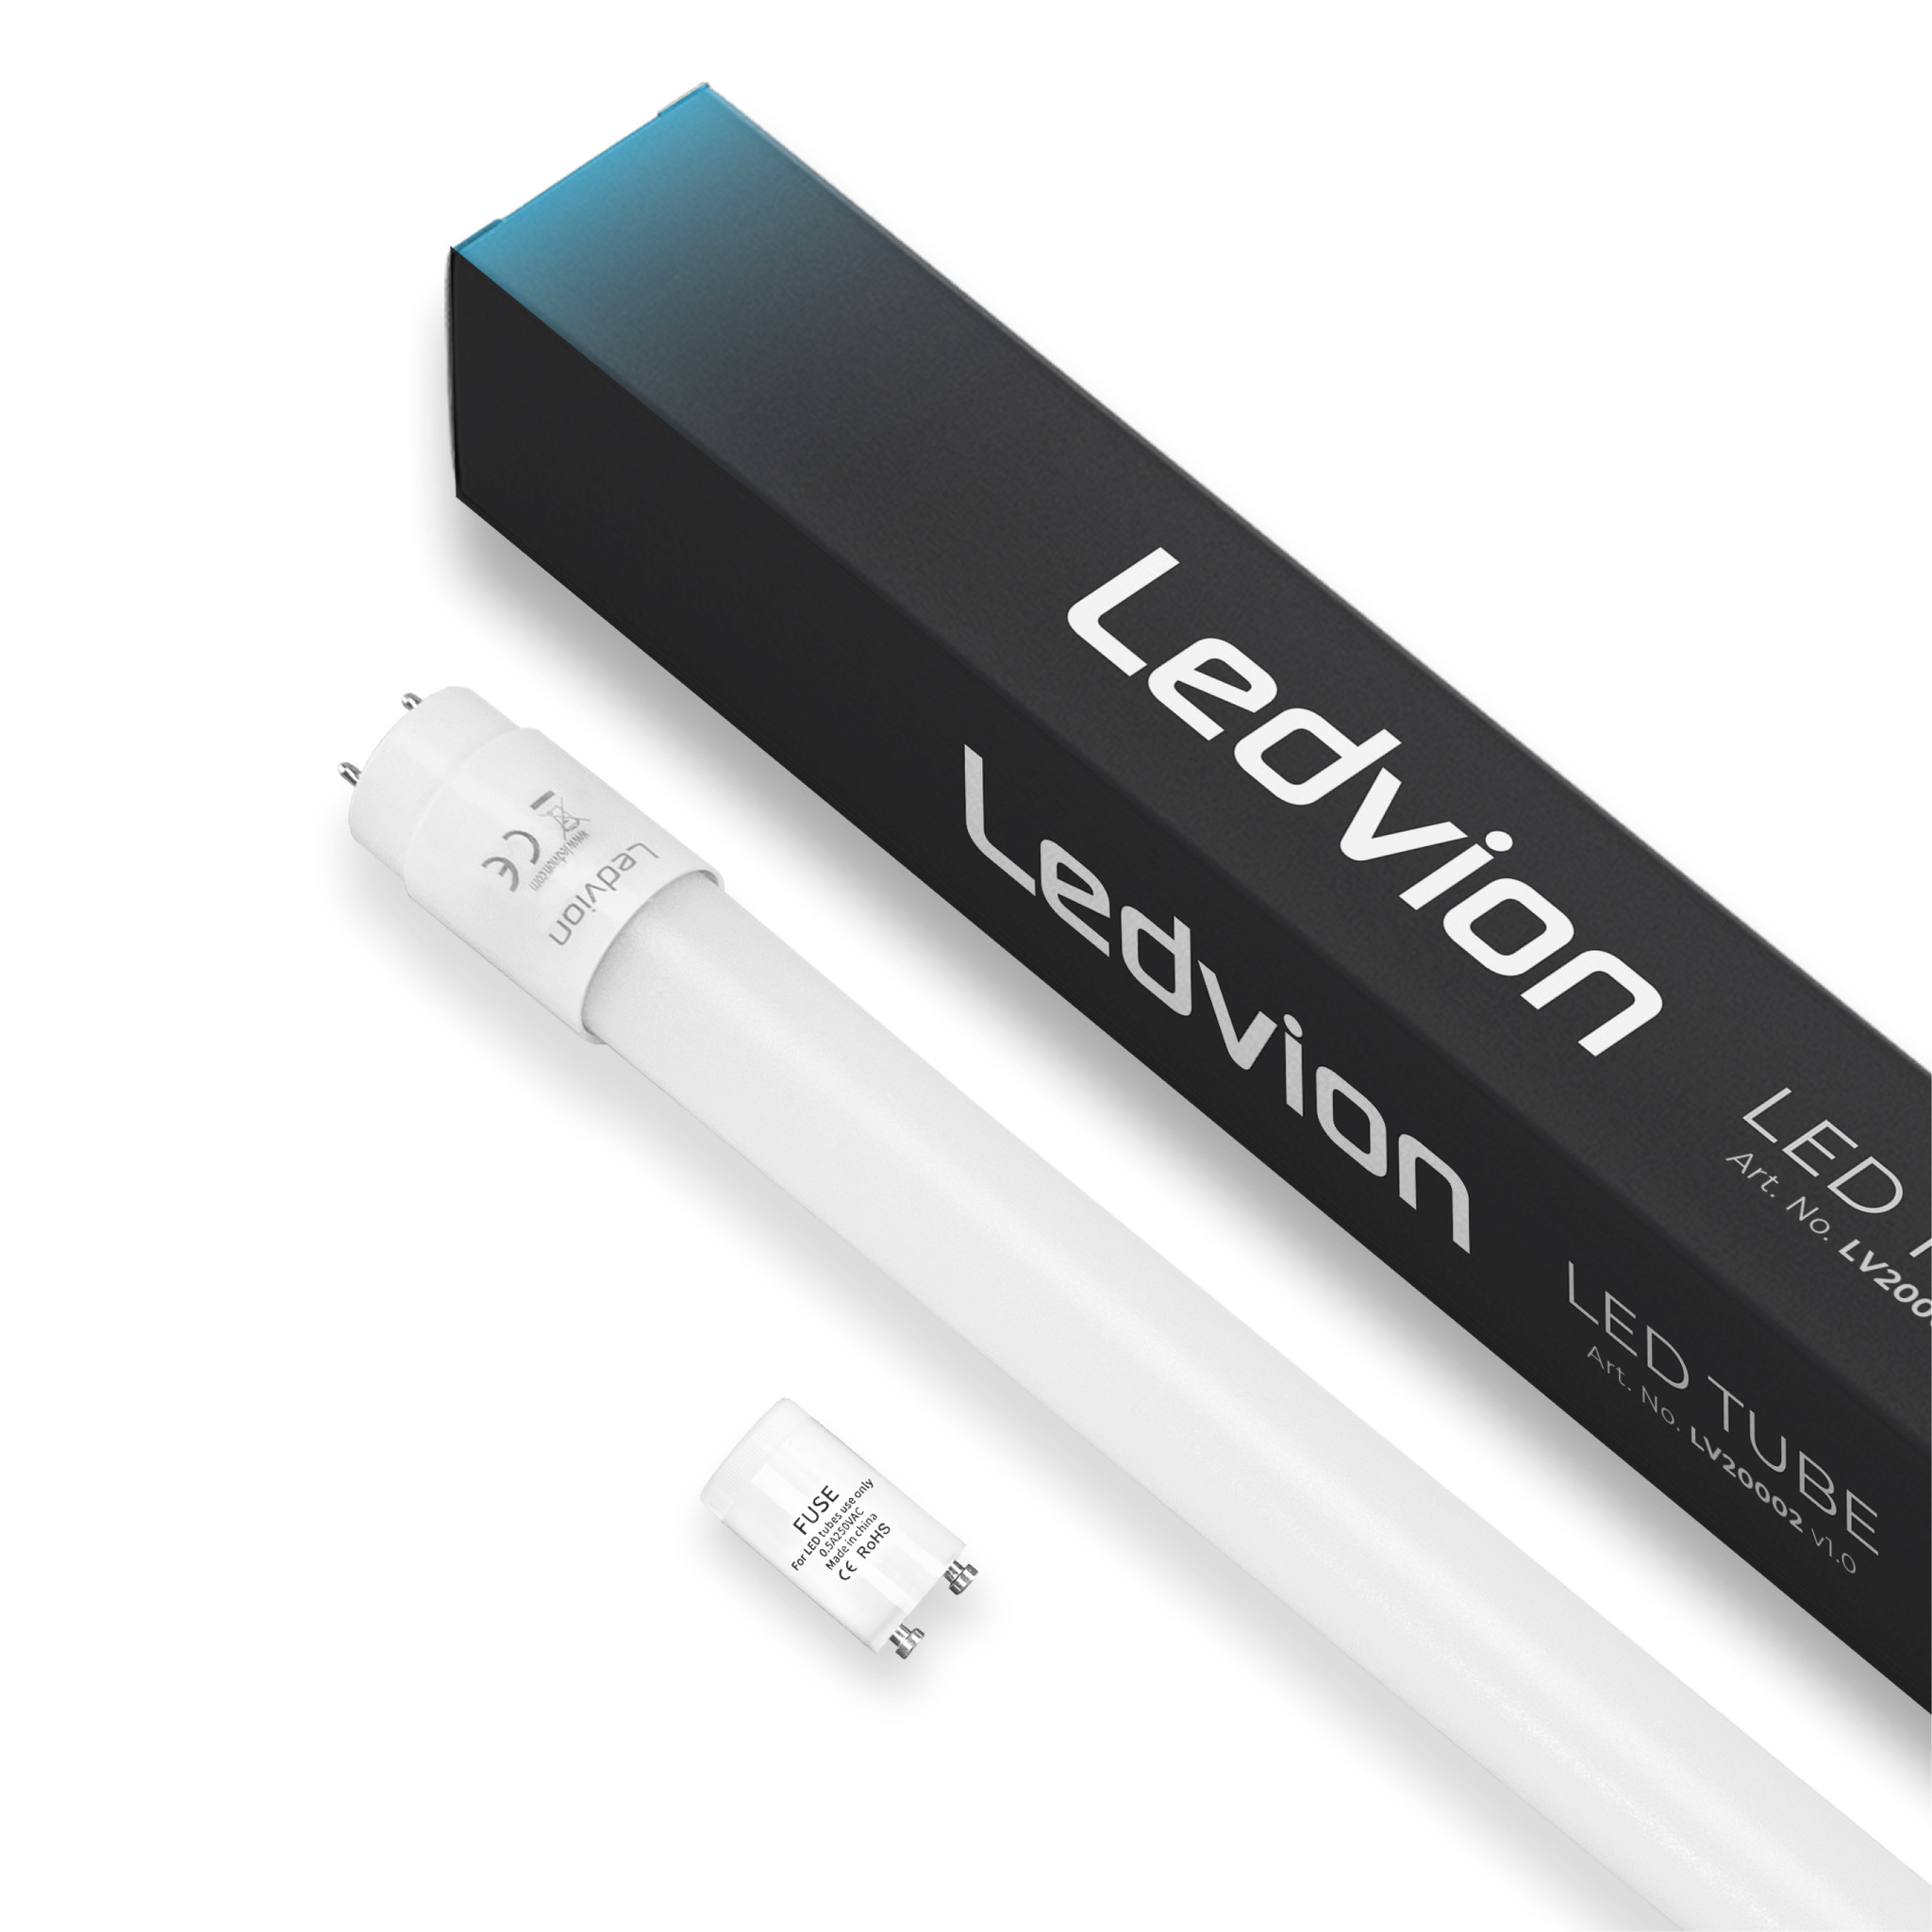 Ledvion Tube néon LED 120CM - 18W - 4000K - 185 Lm/W - Haute efficacité -  Label énergétique B